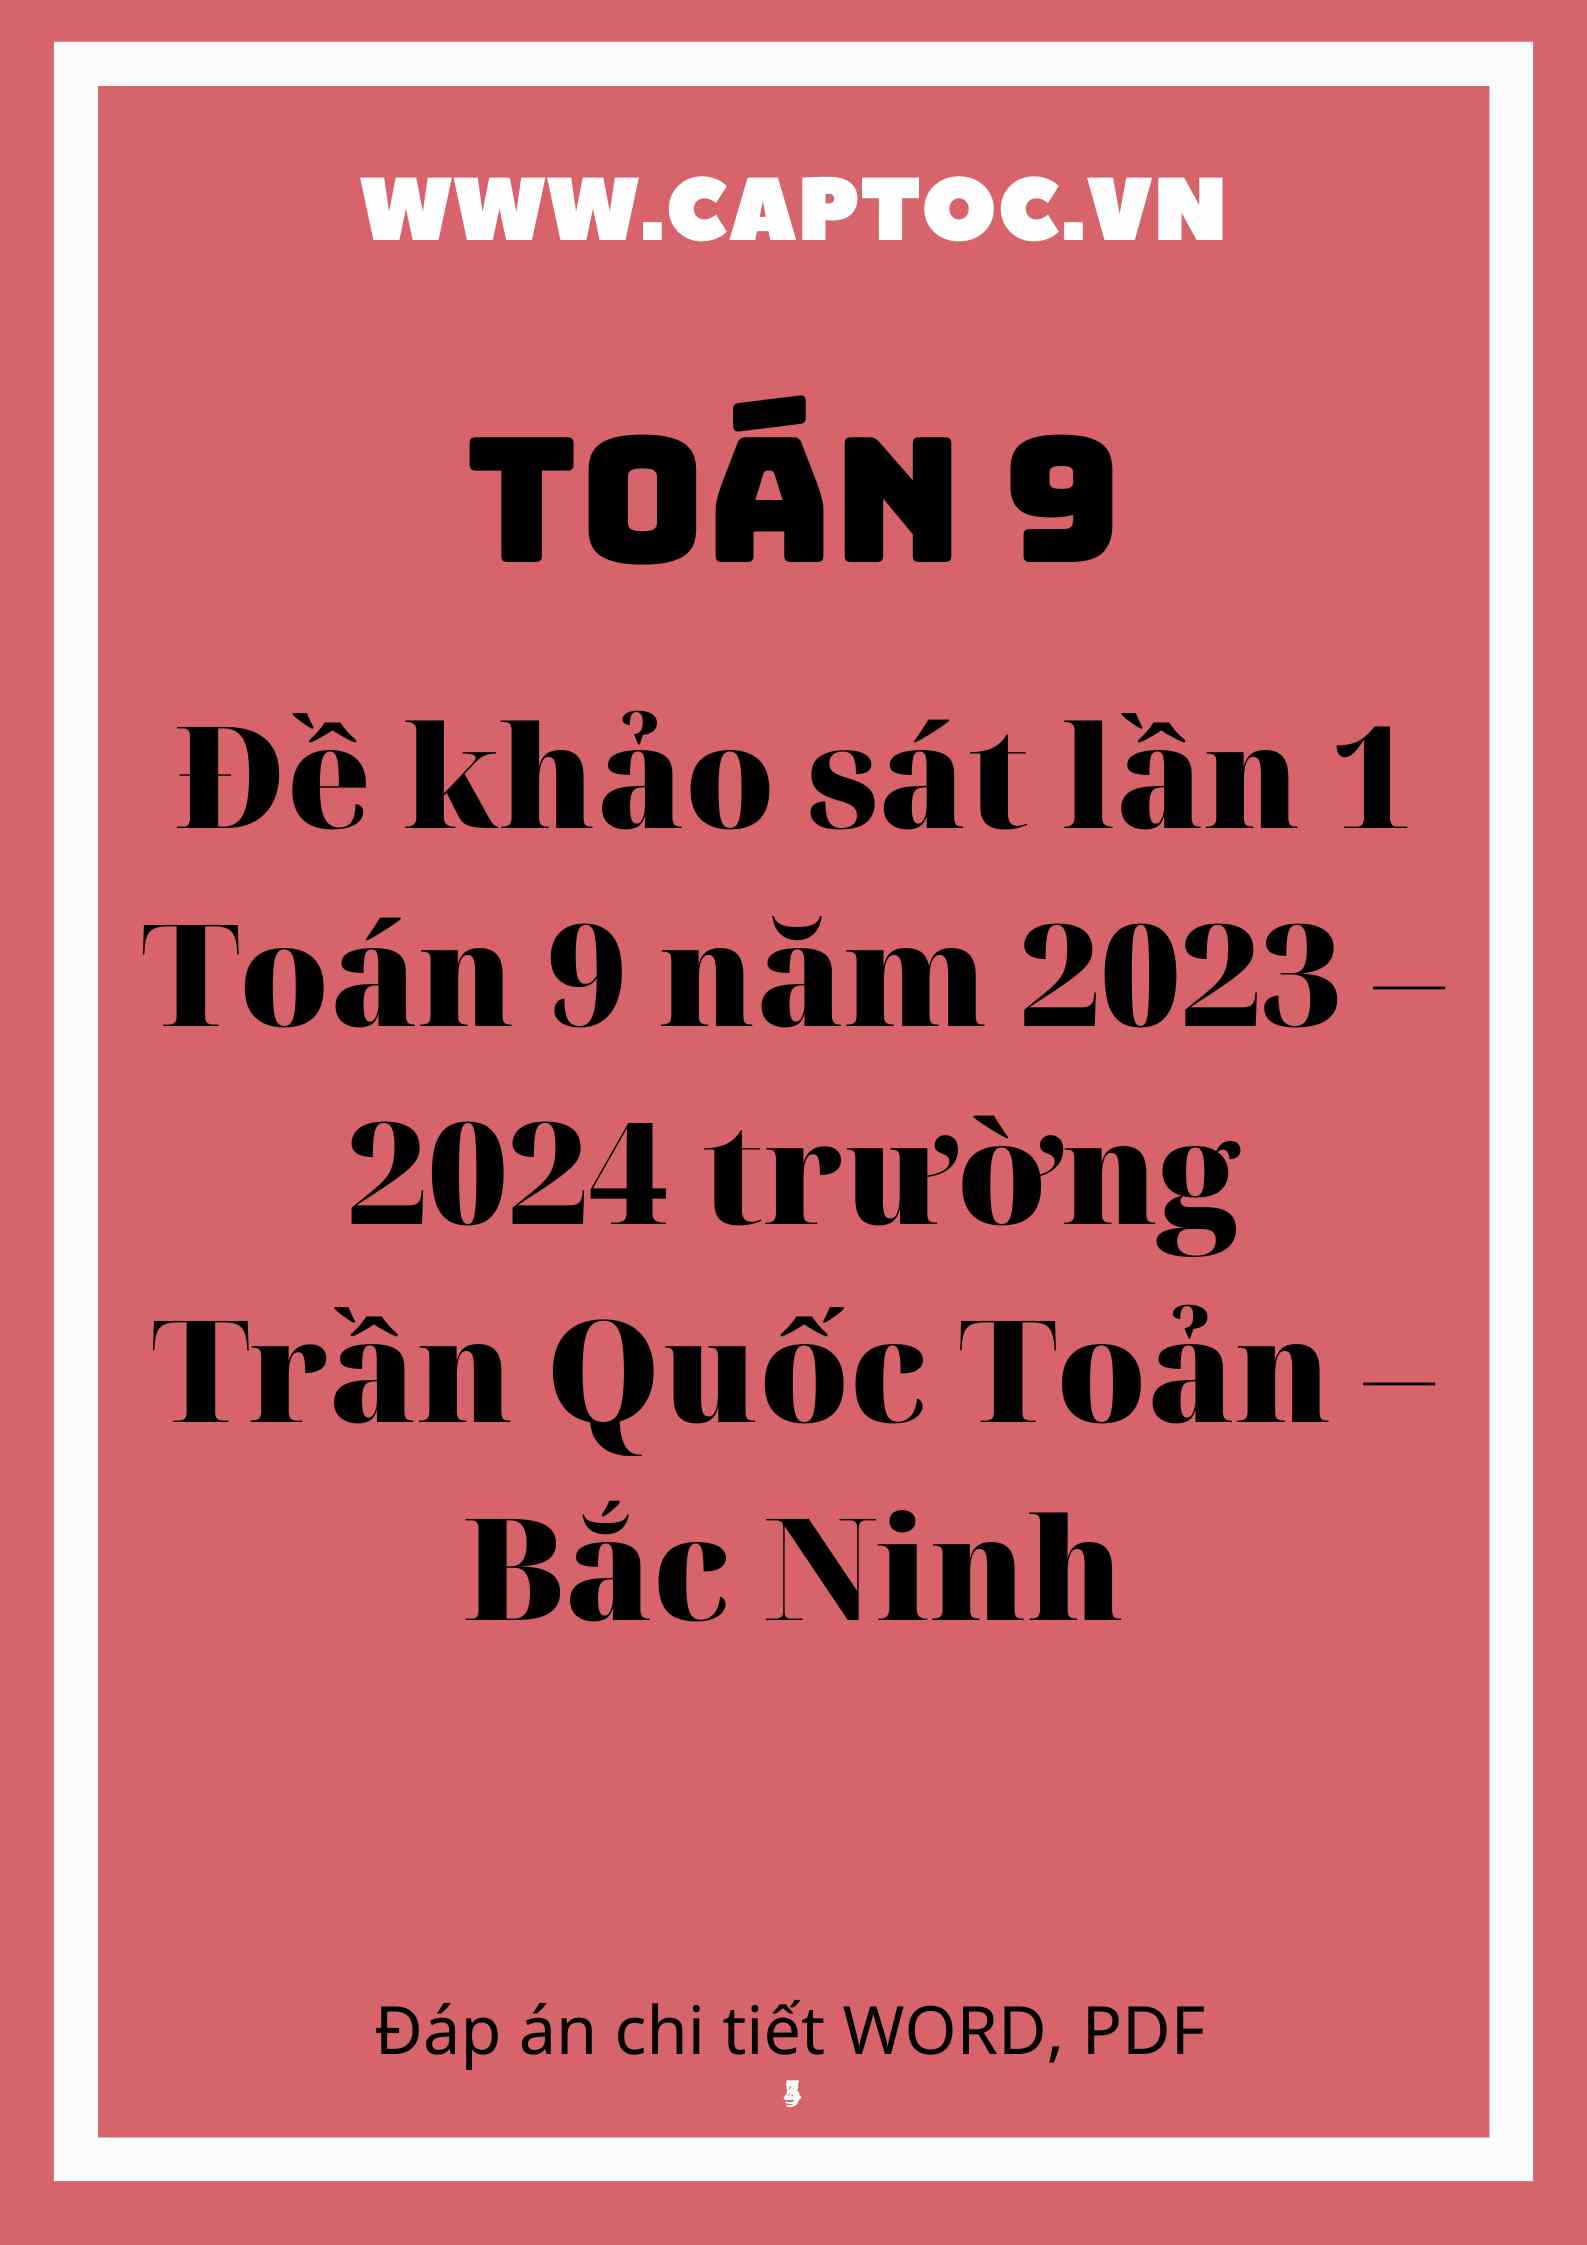 Đề khảo sát lần 1 Toán 9 năm 2023 – 2024 trường Trần Quốc Toản – Bắc Ninh